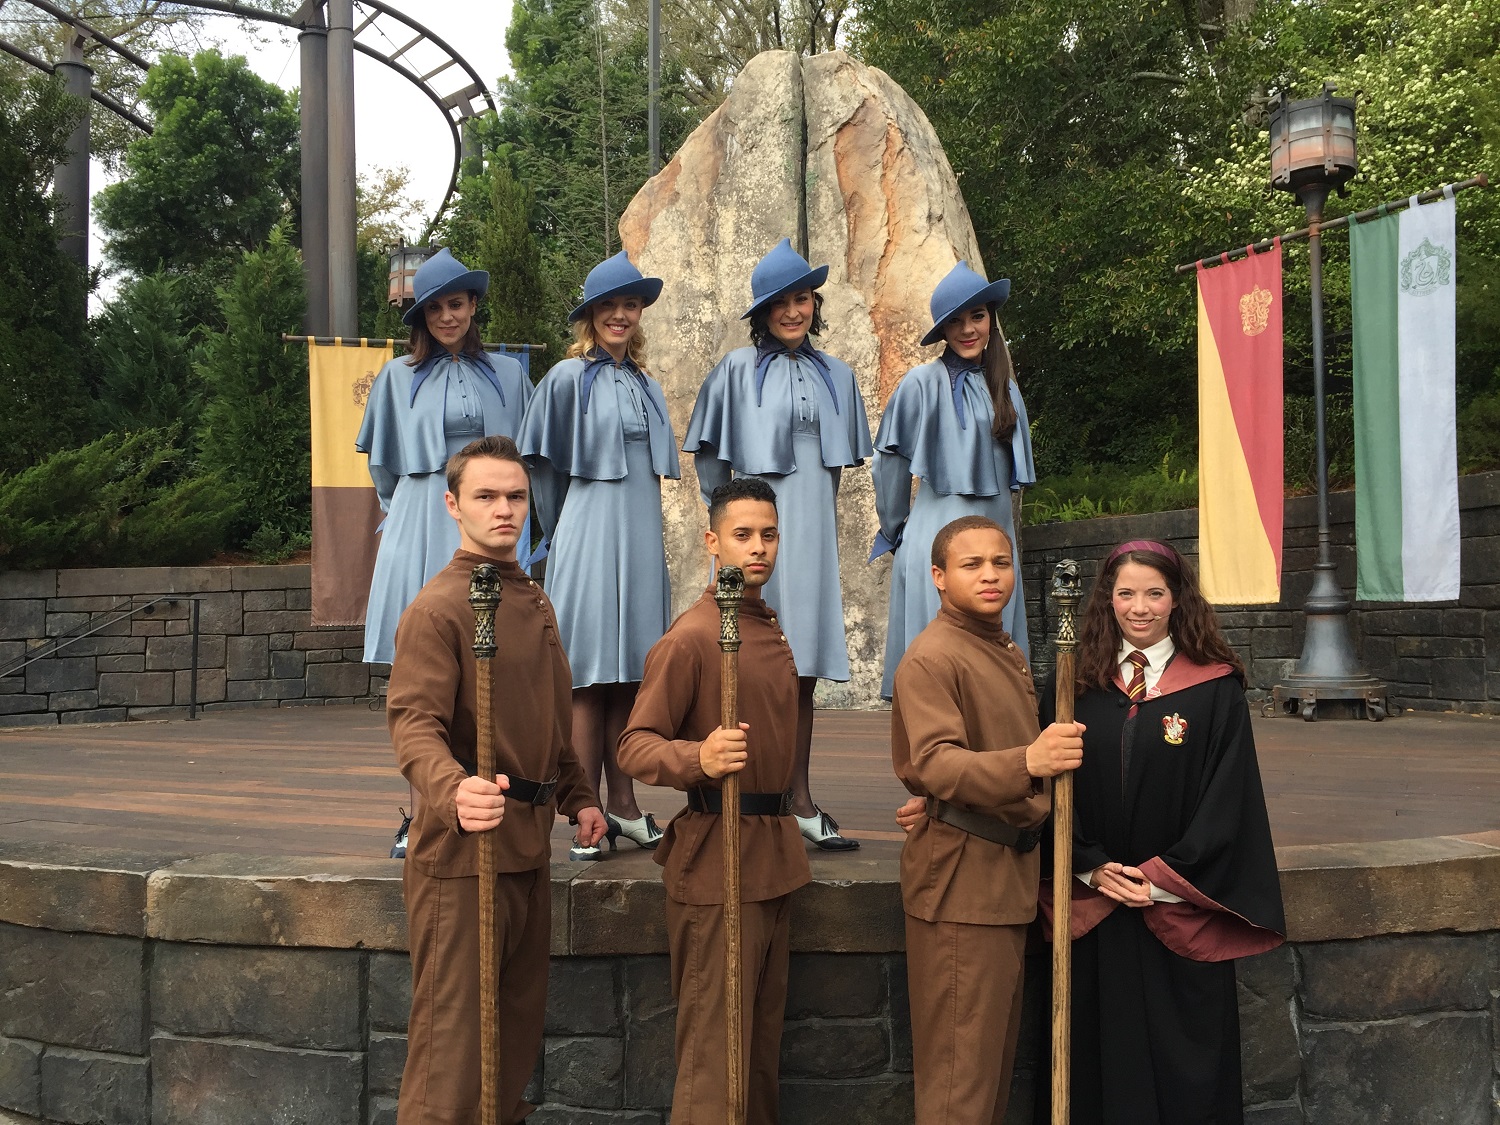 Triwizard Spirit Rally Performers - Harry Potter en Islands of Adventure